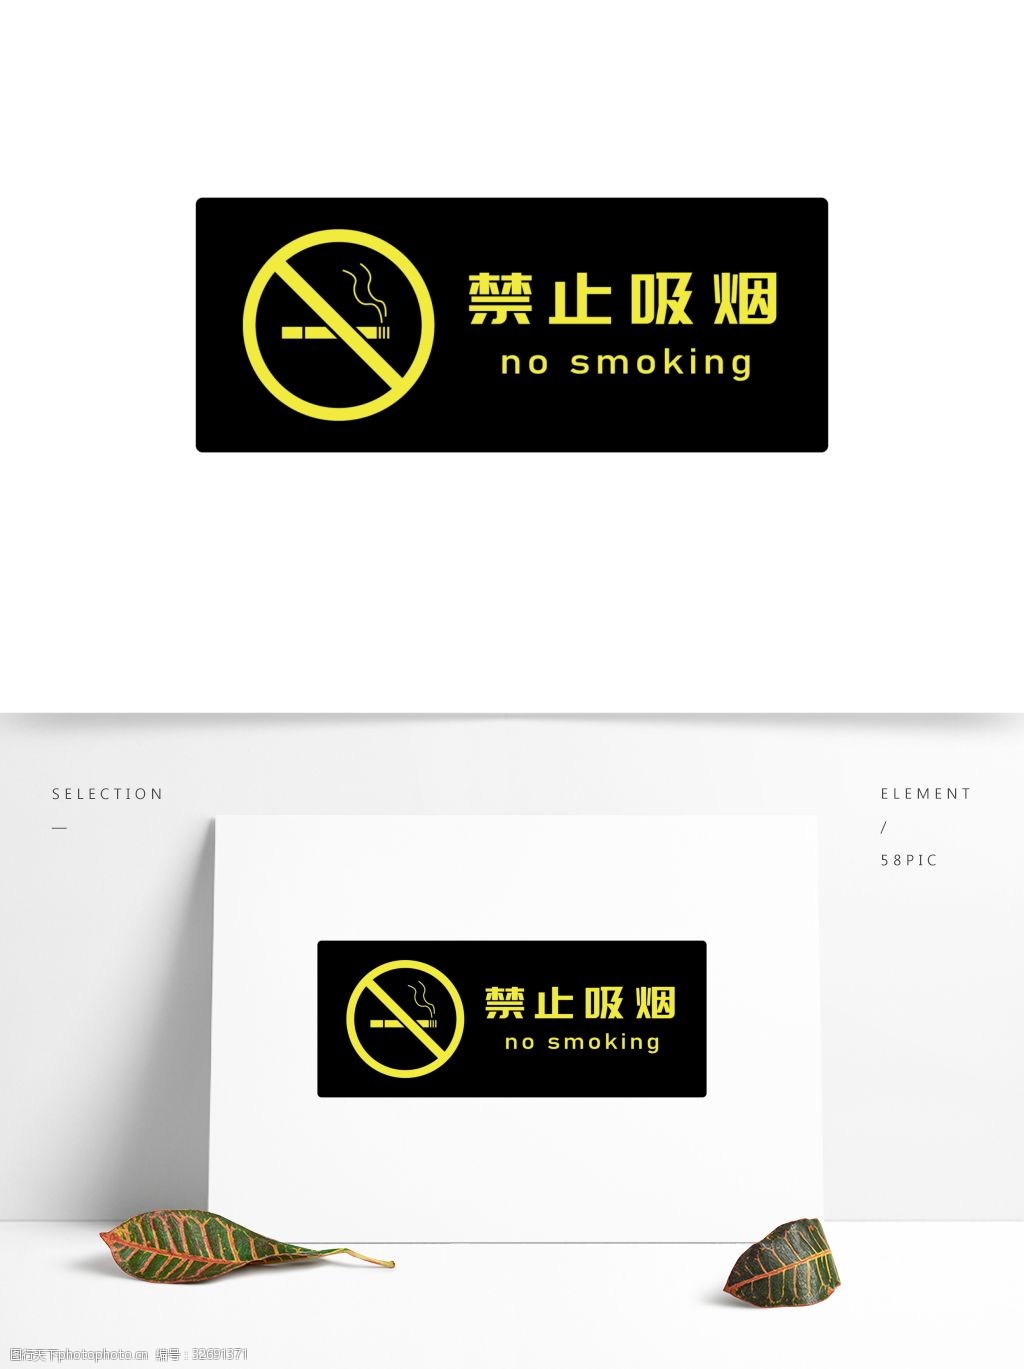 公共场合禁止吸烟标识